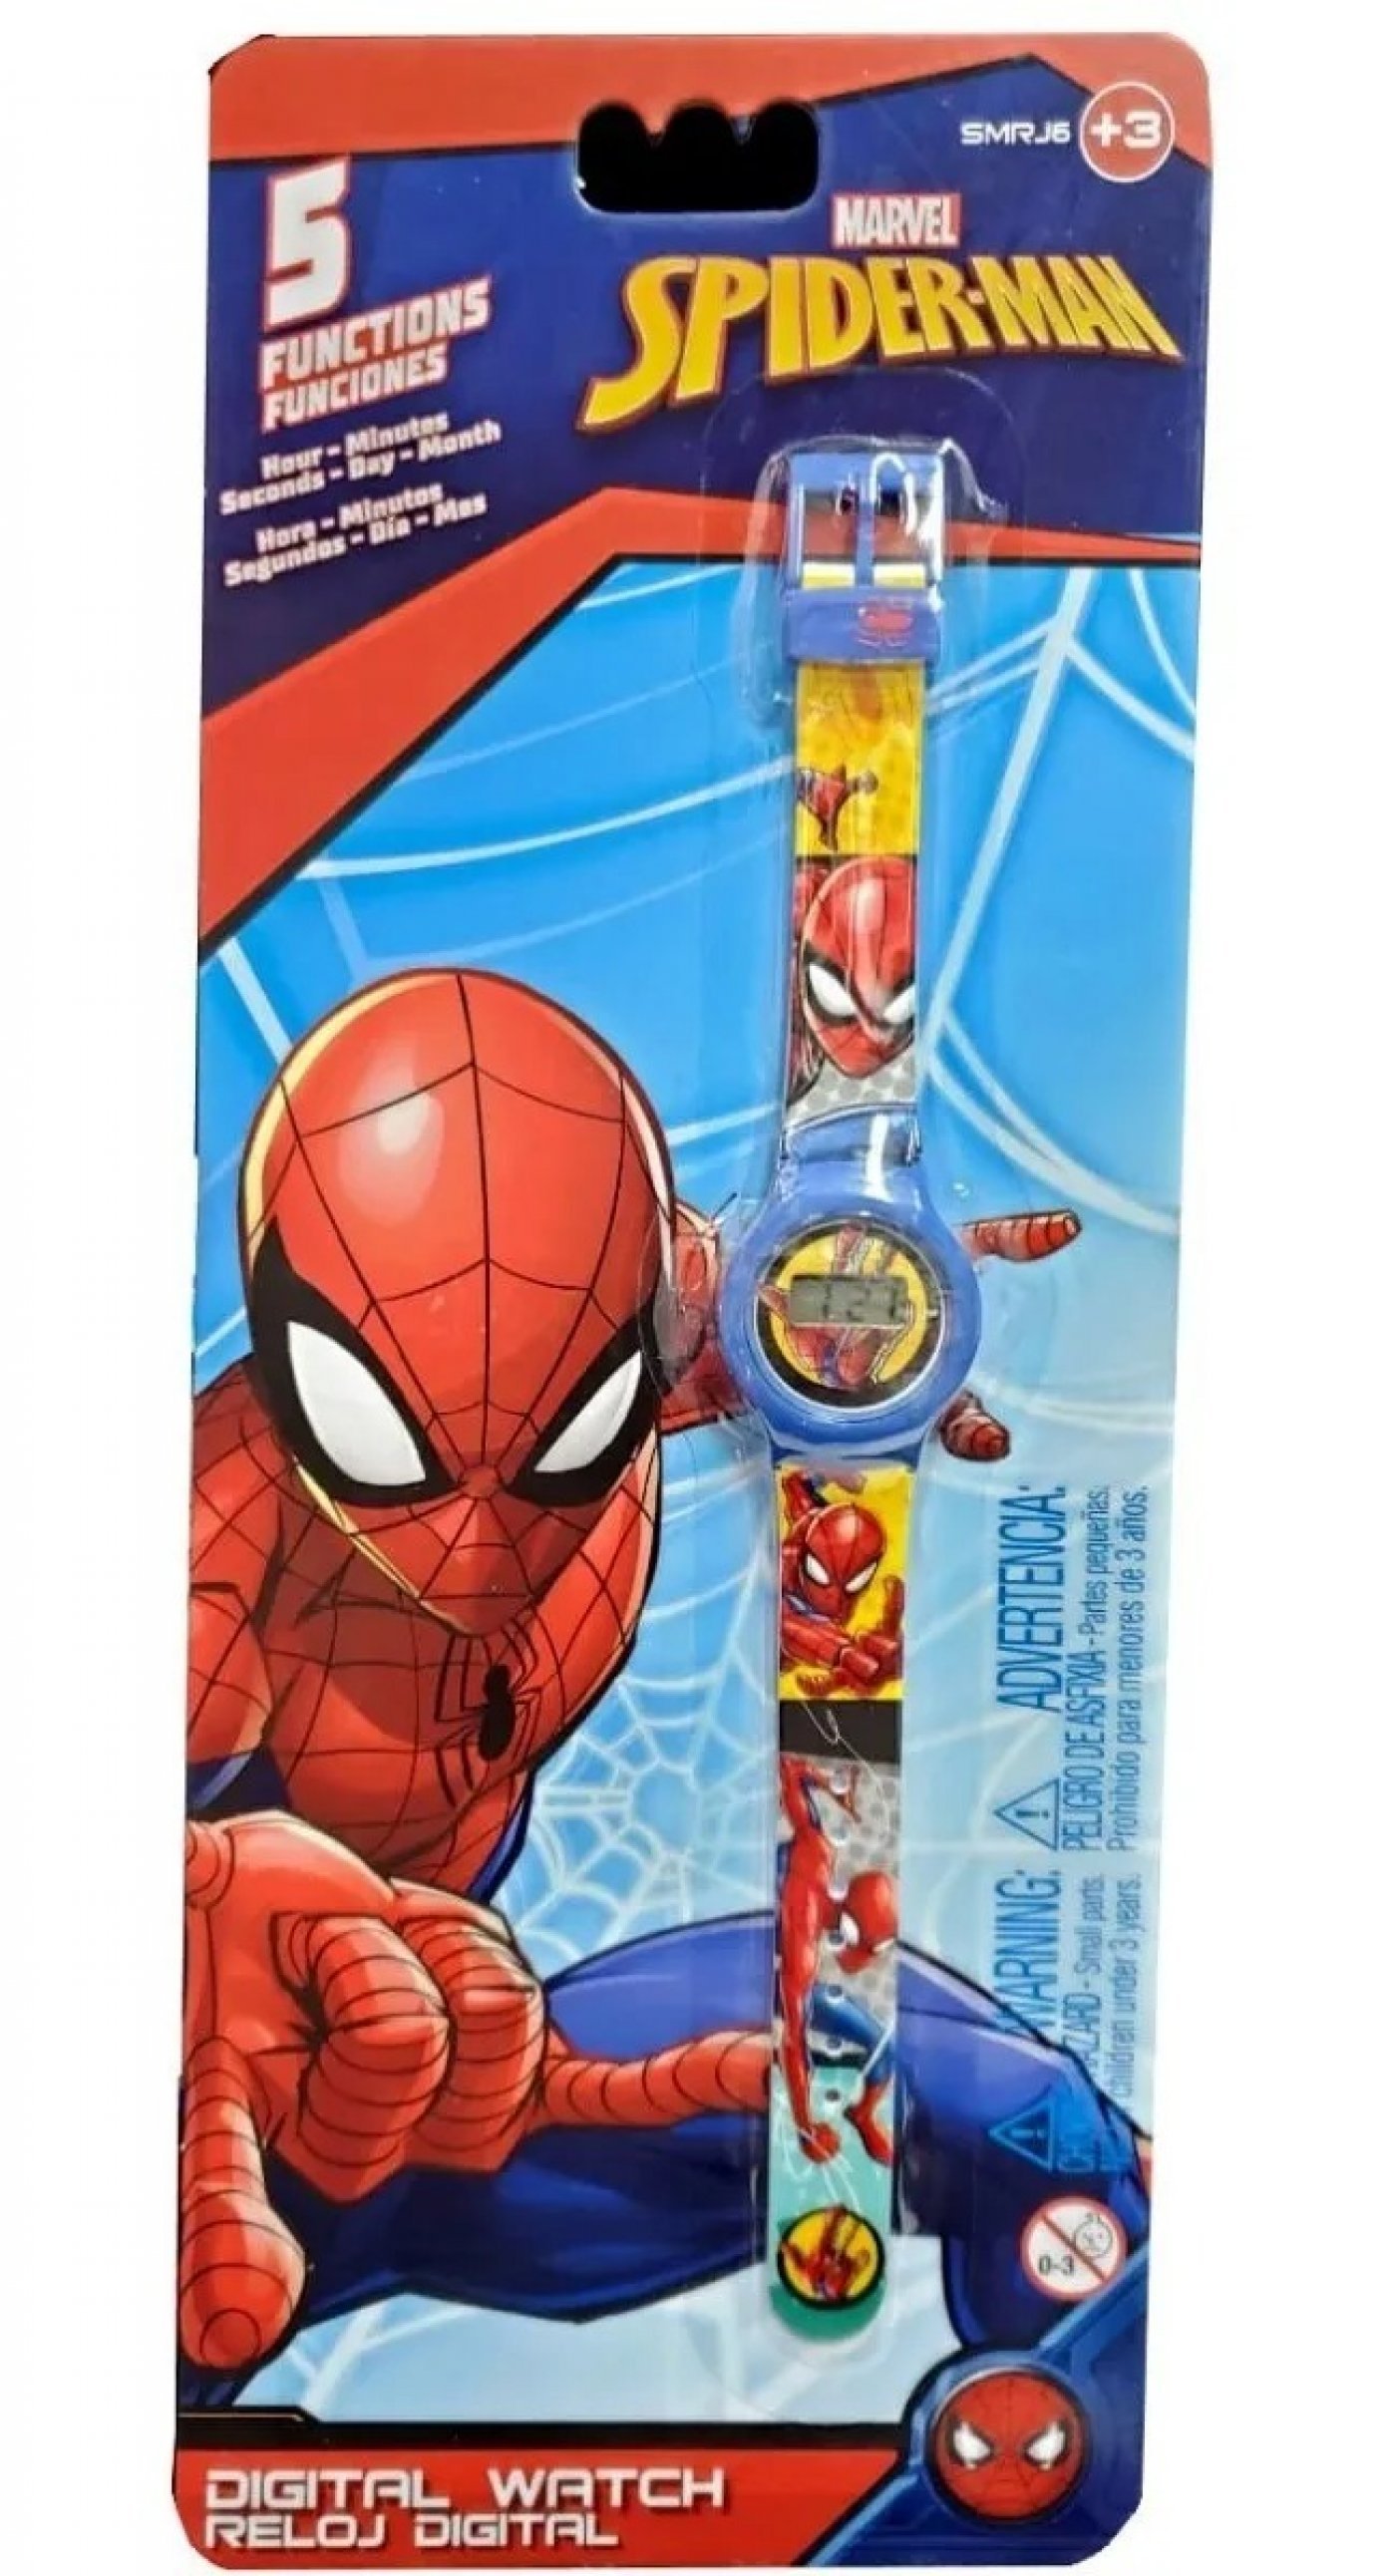 Reloj Digital Spiderman 5 Funciones ( sin stock )